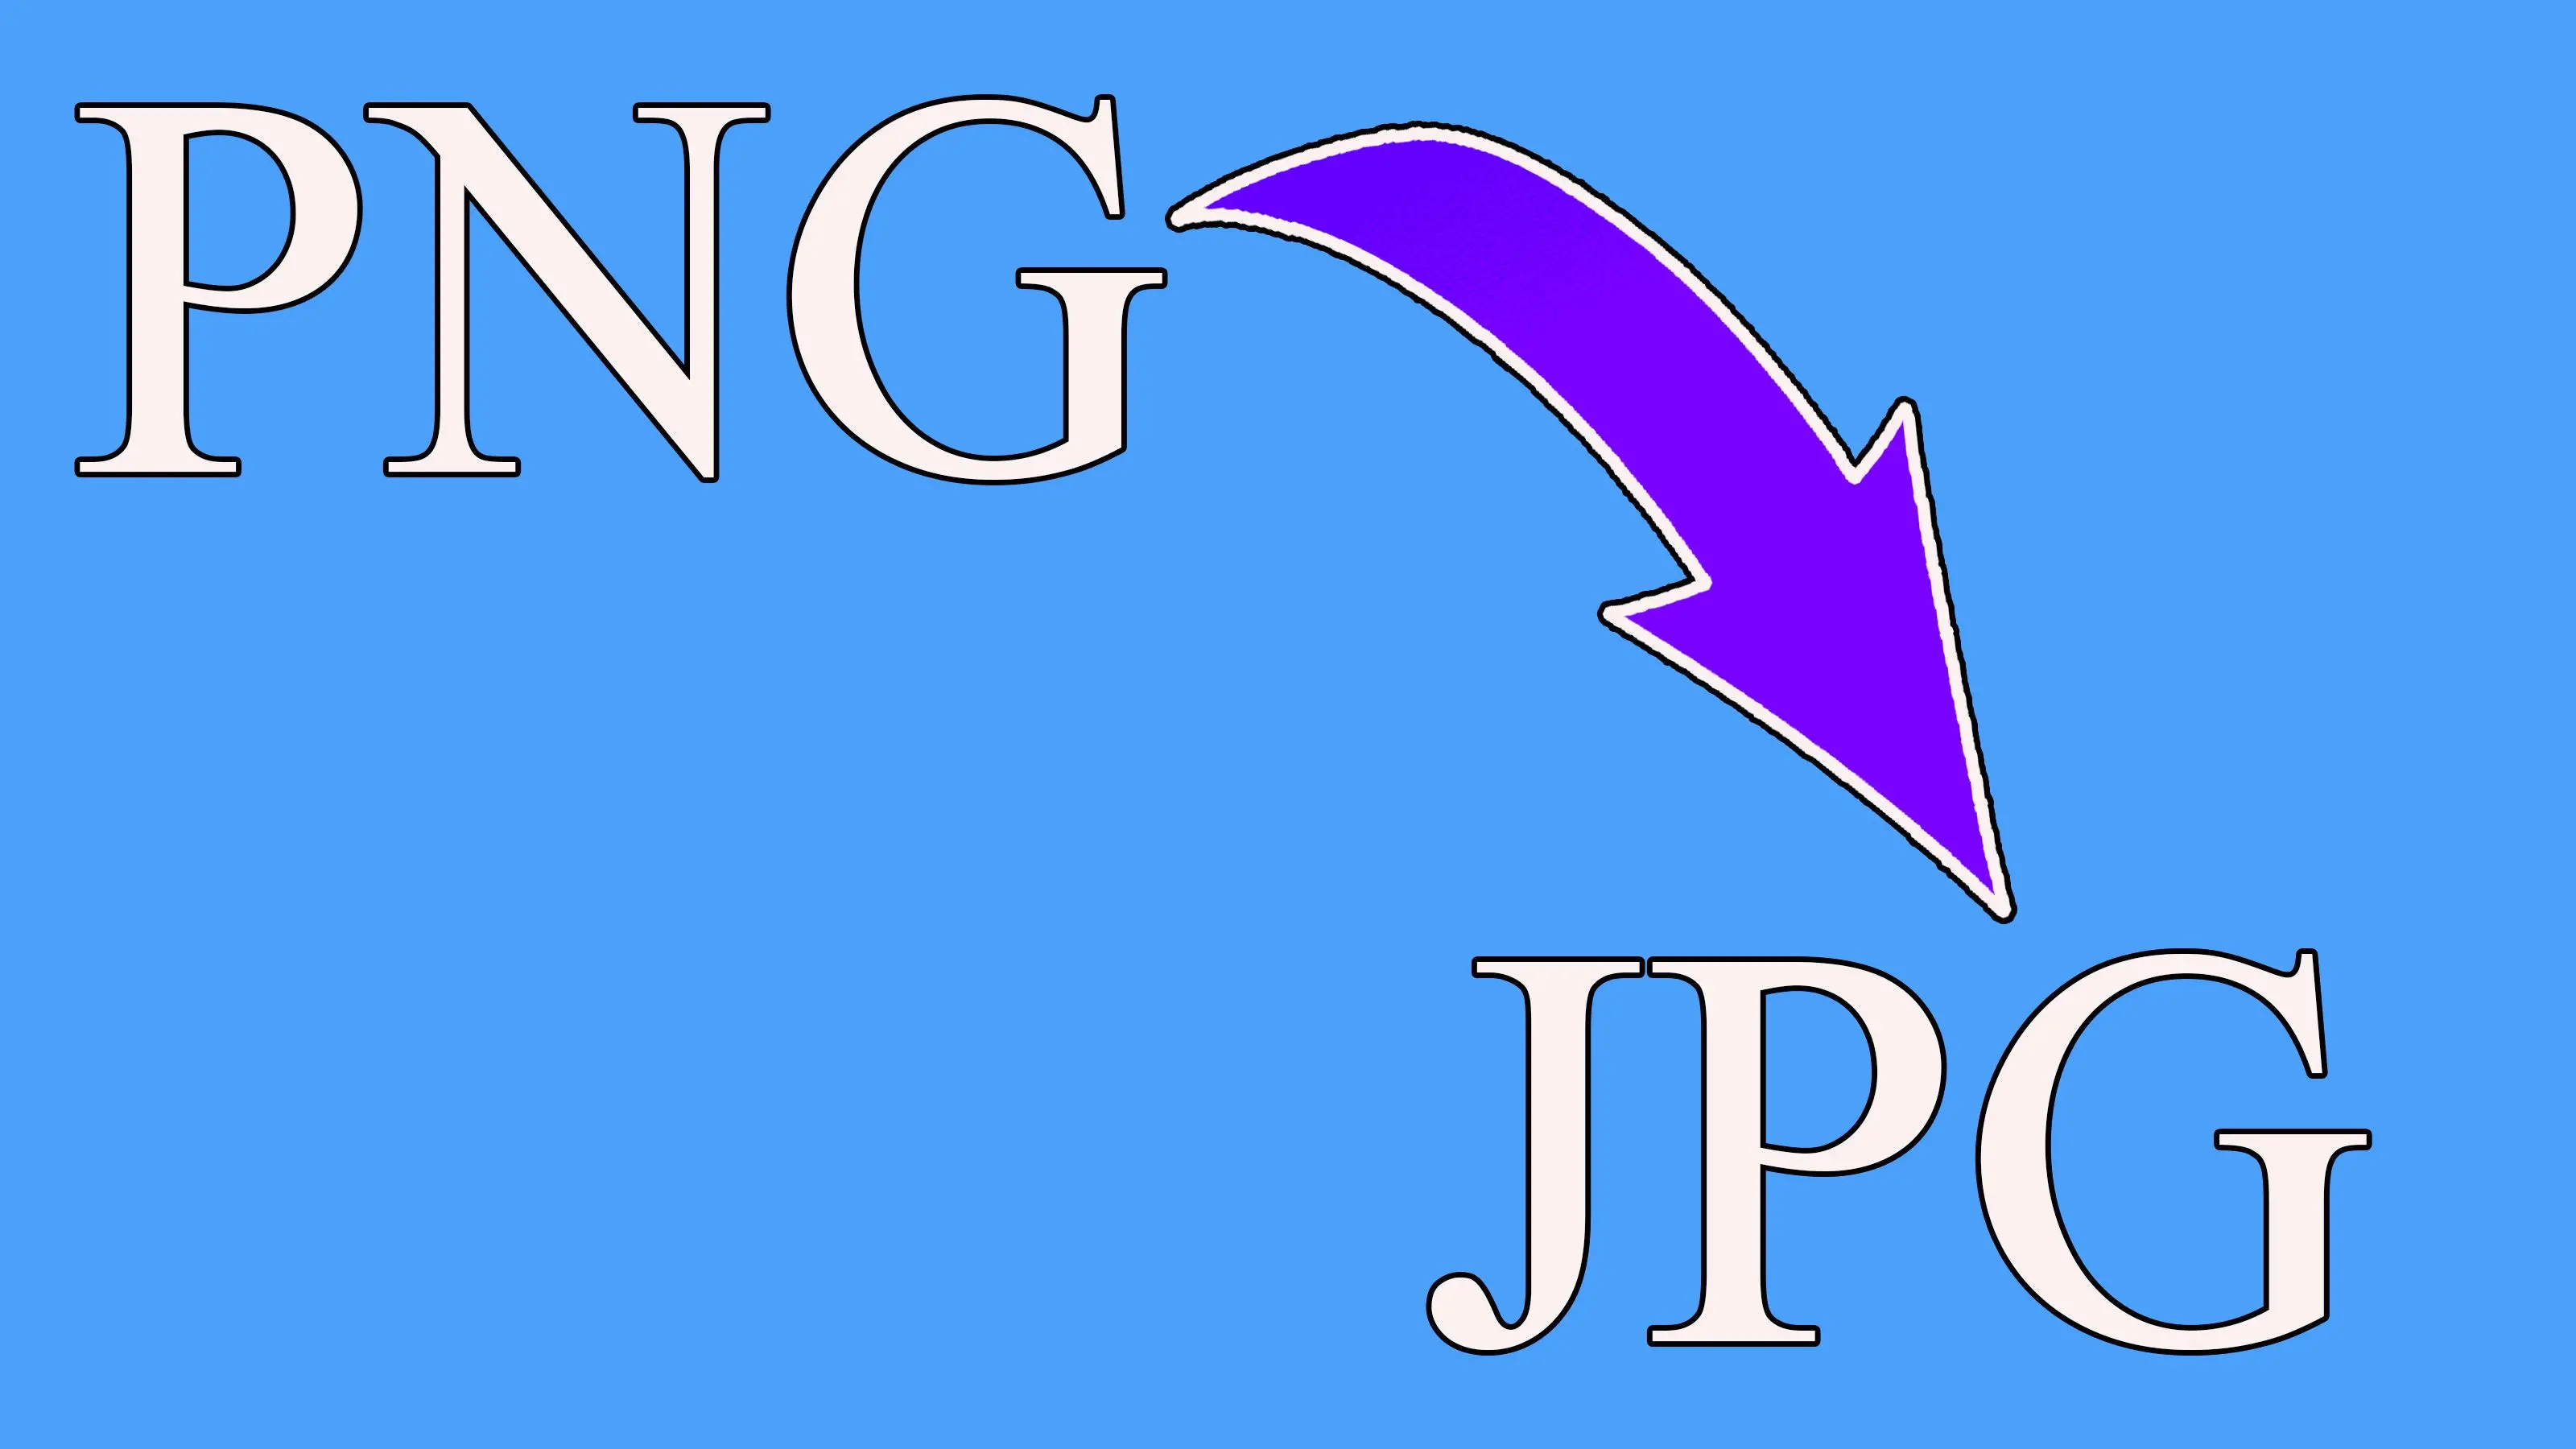 Πρόγραμμα μετατροπής PNG σε JPG για τα Windows 11..